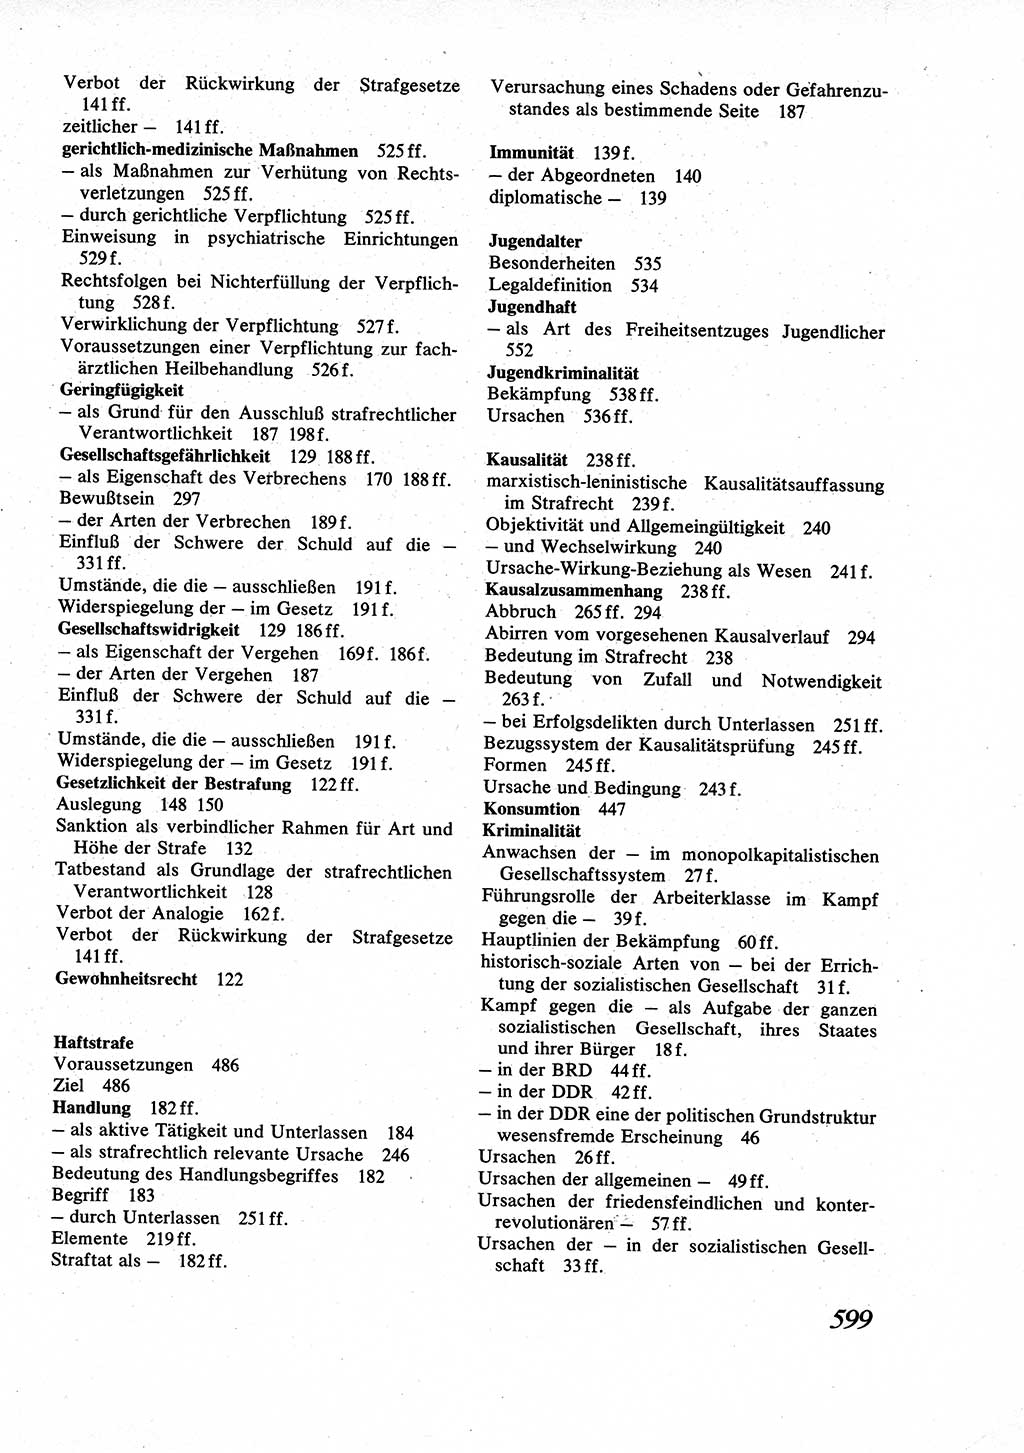 Strafrecht [Deutsche Demokratische Republik (DDR)], Allgemeiner Teil, Lehrbuch 1976, Seite 599 (Strafr. DDR AT Lb. 1976, S. 599)